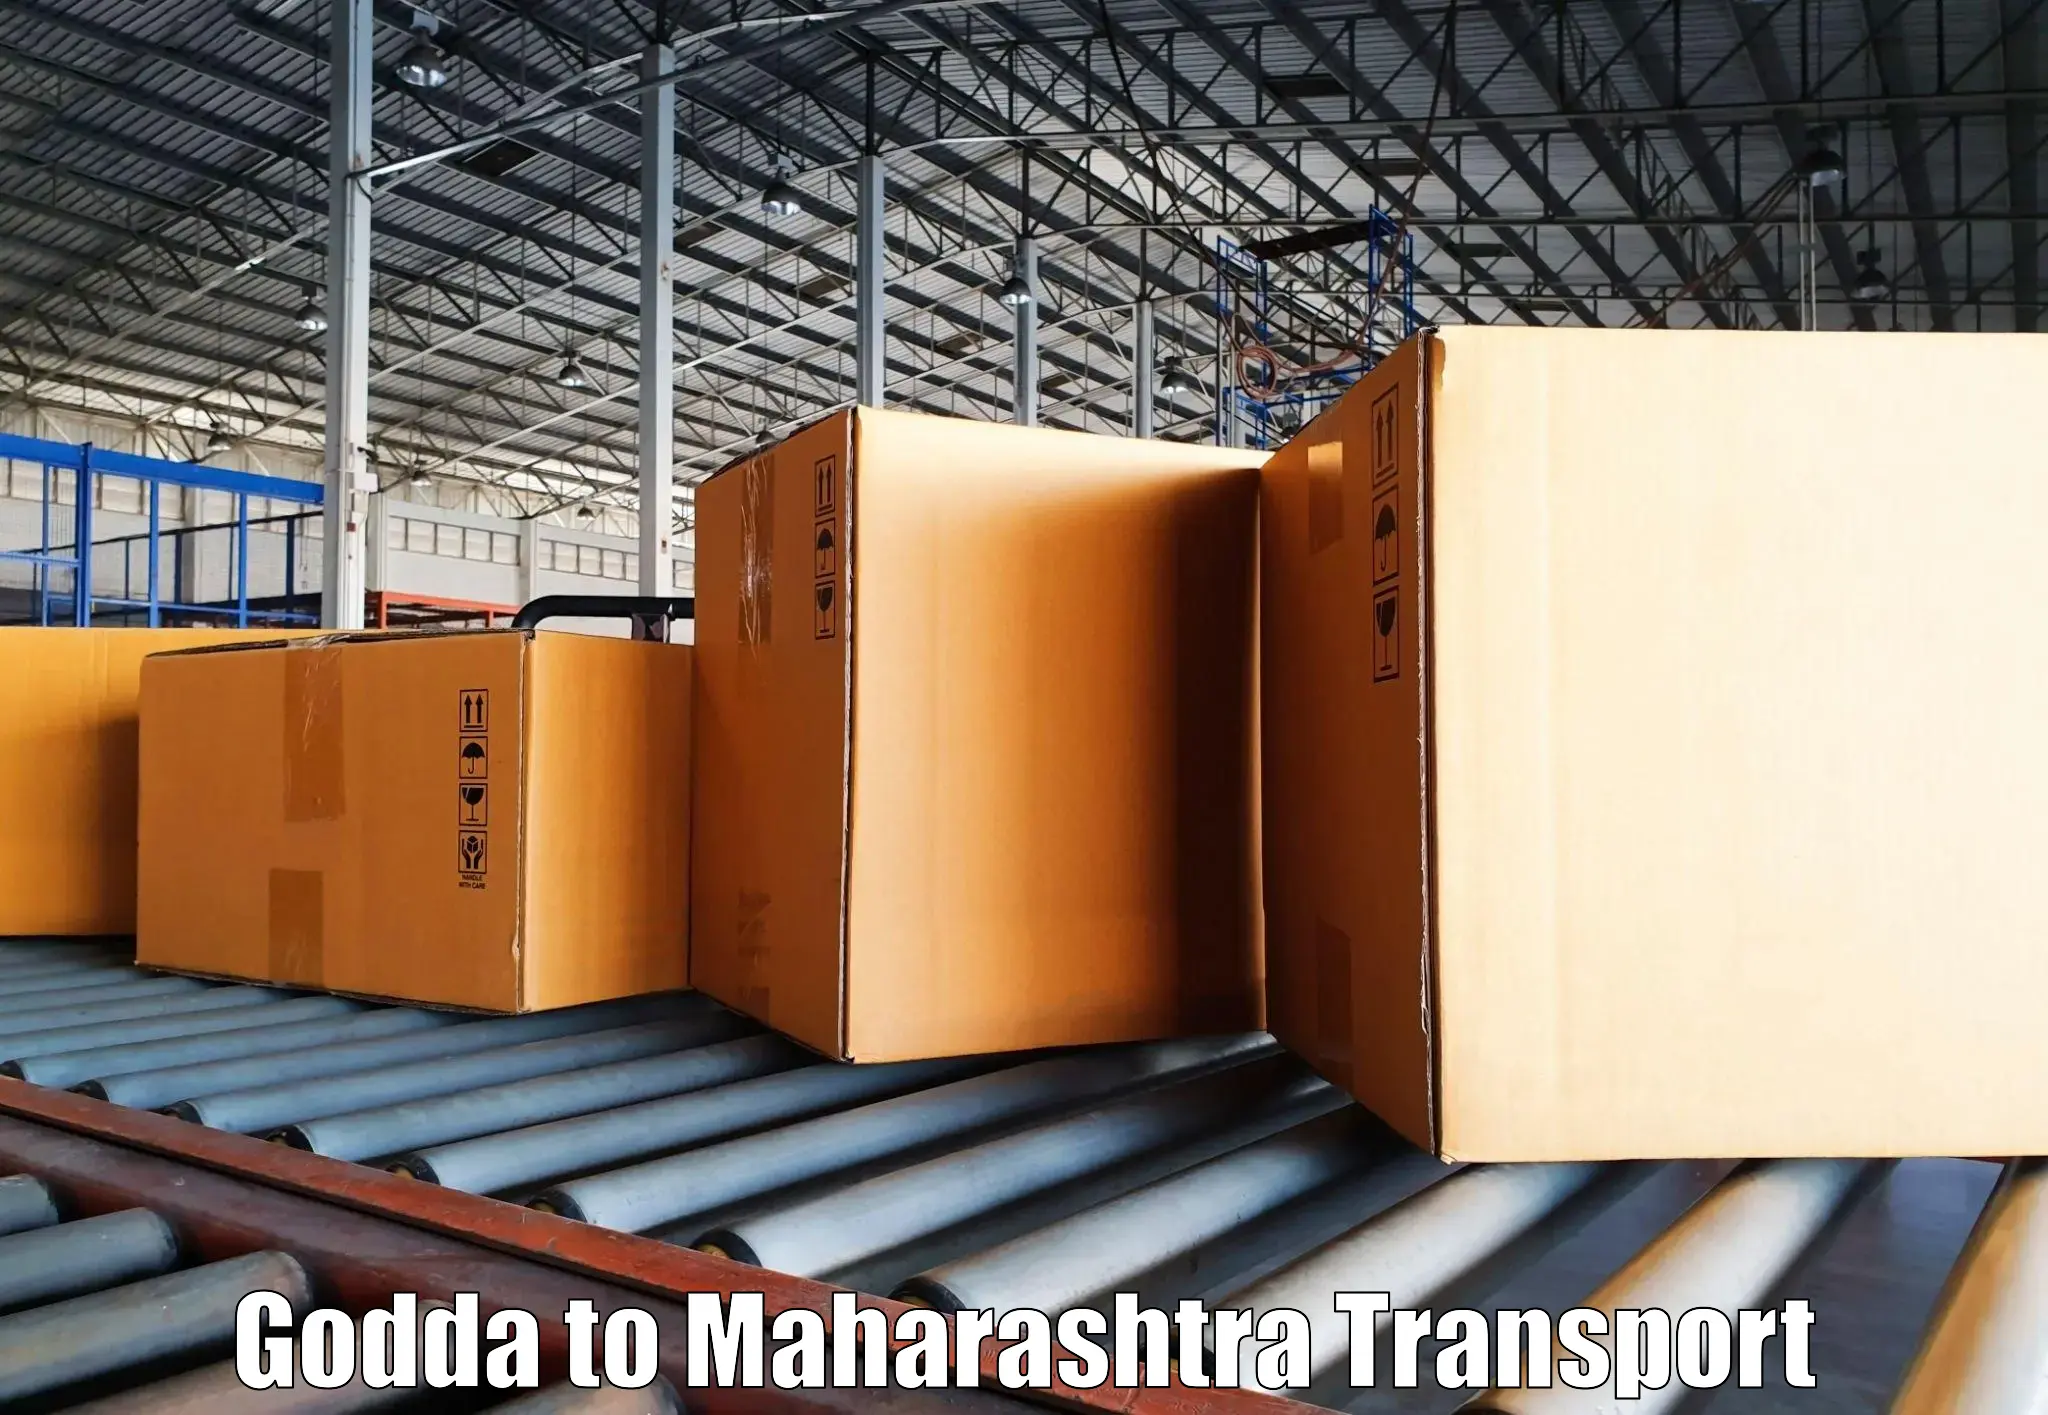 Furniture transport service Godda to Igatpuri